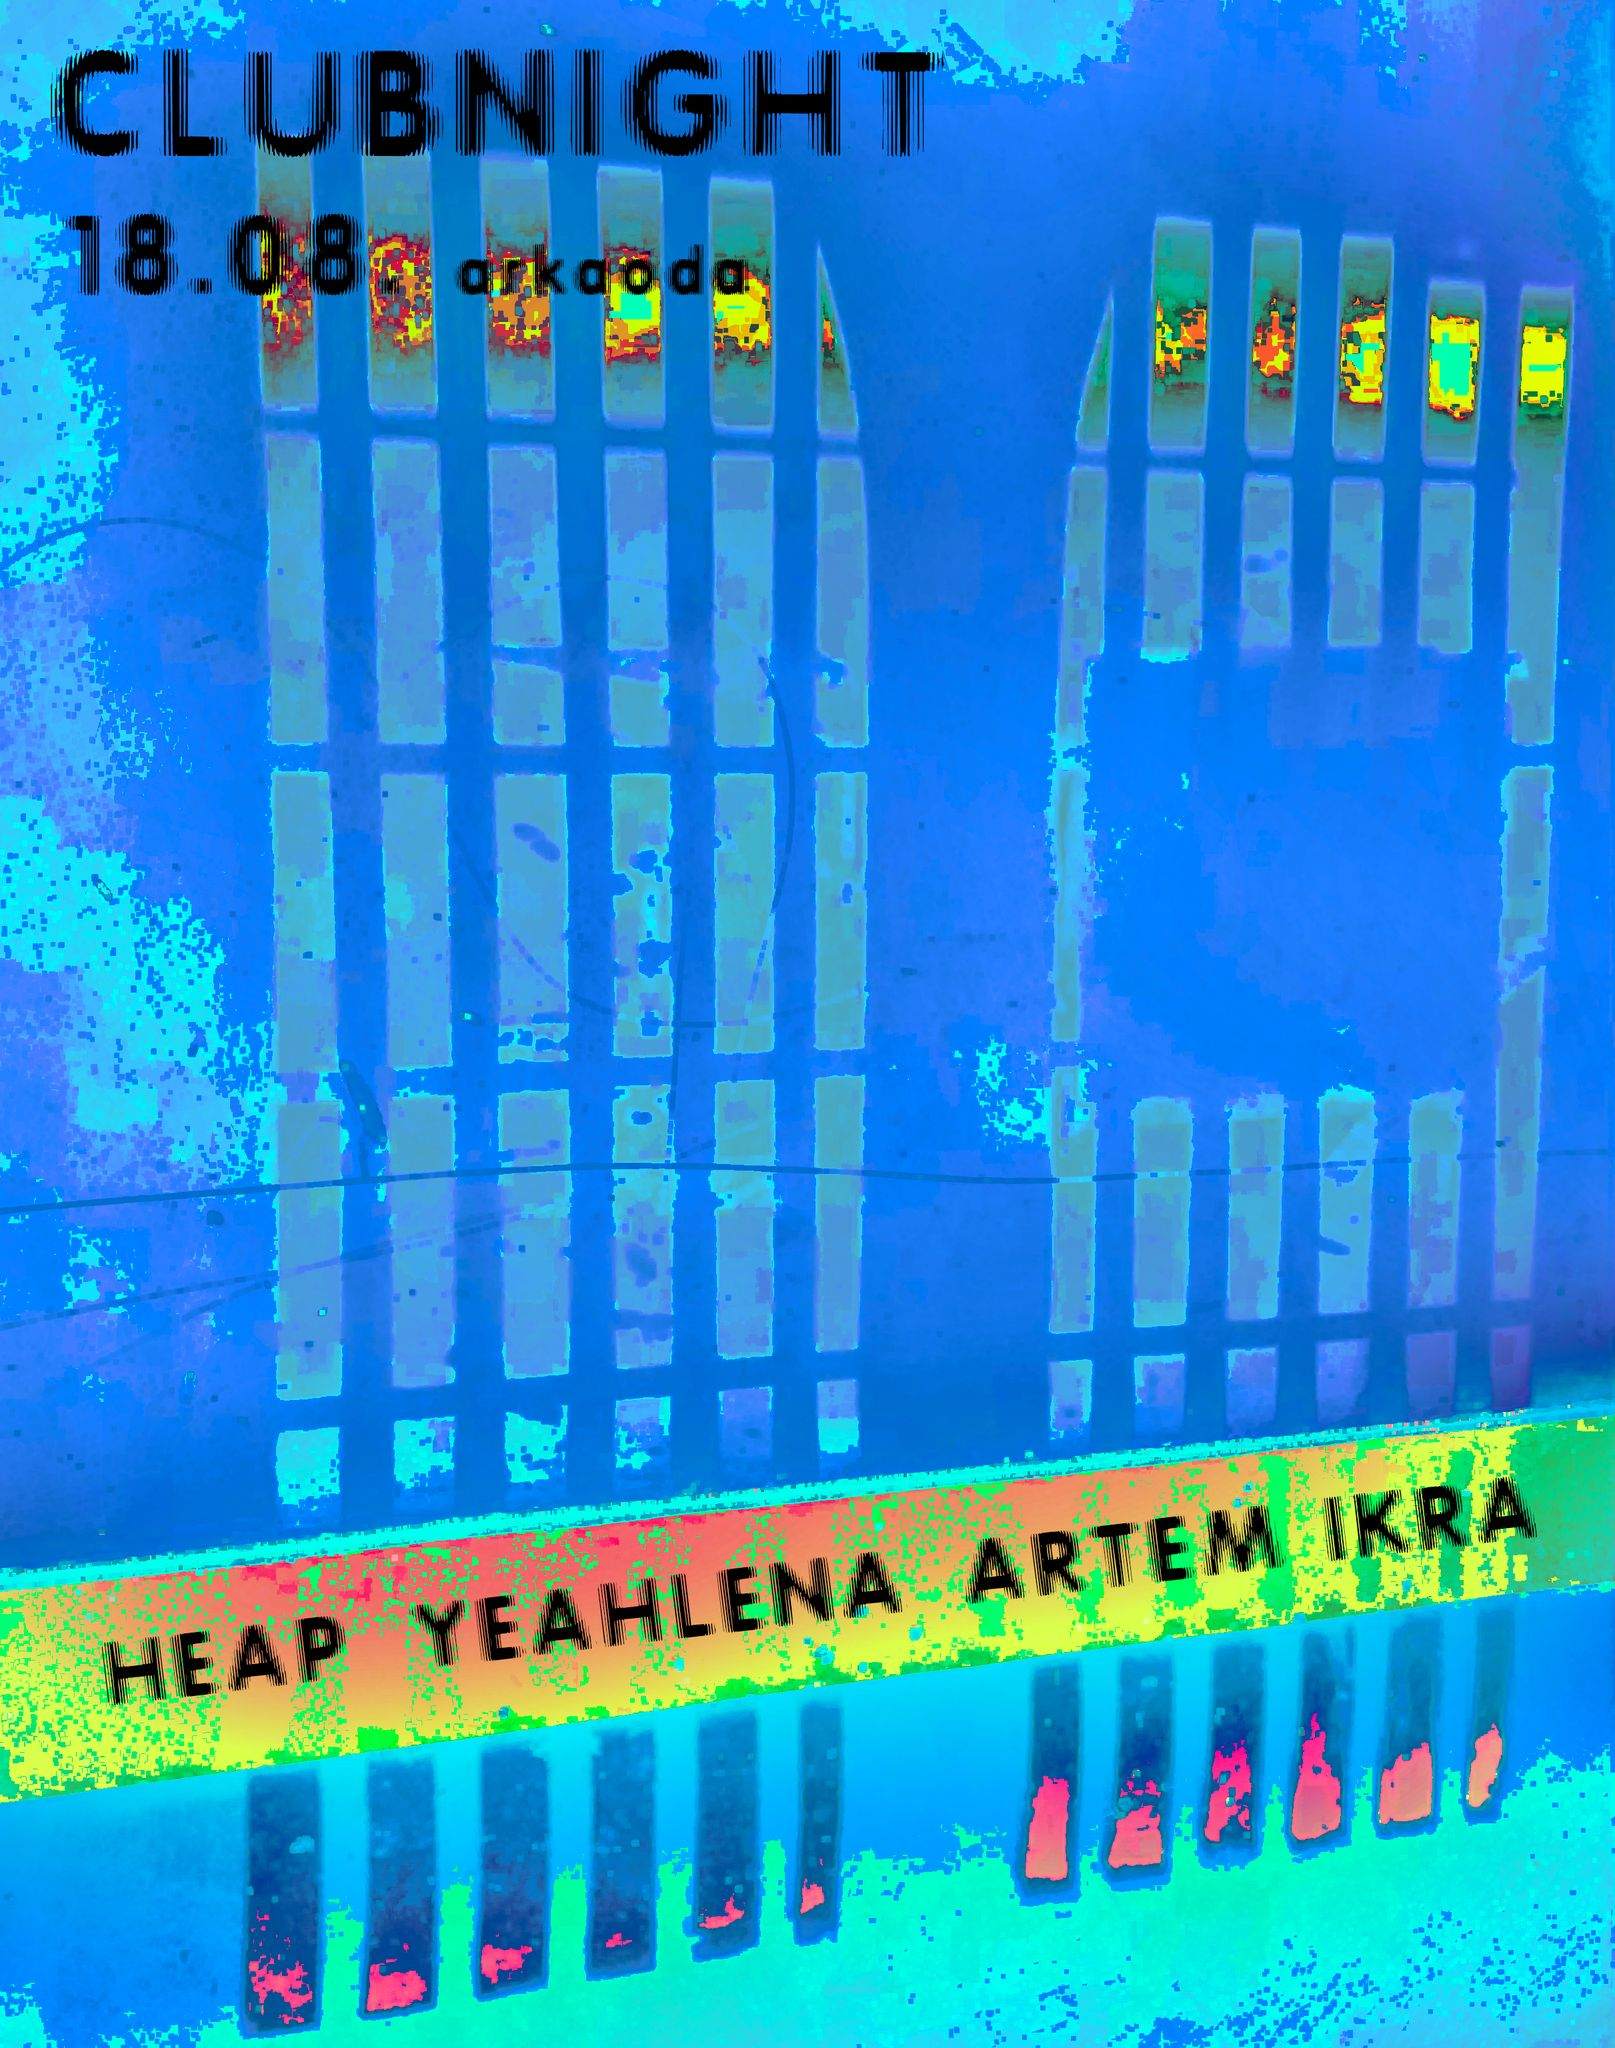 CLUBNIGHT with Heap + Yeahlena + Artem Ikra - Página frontal